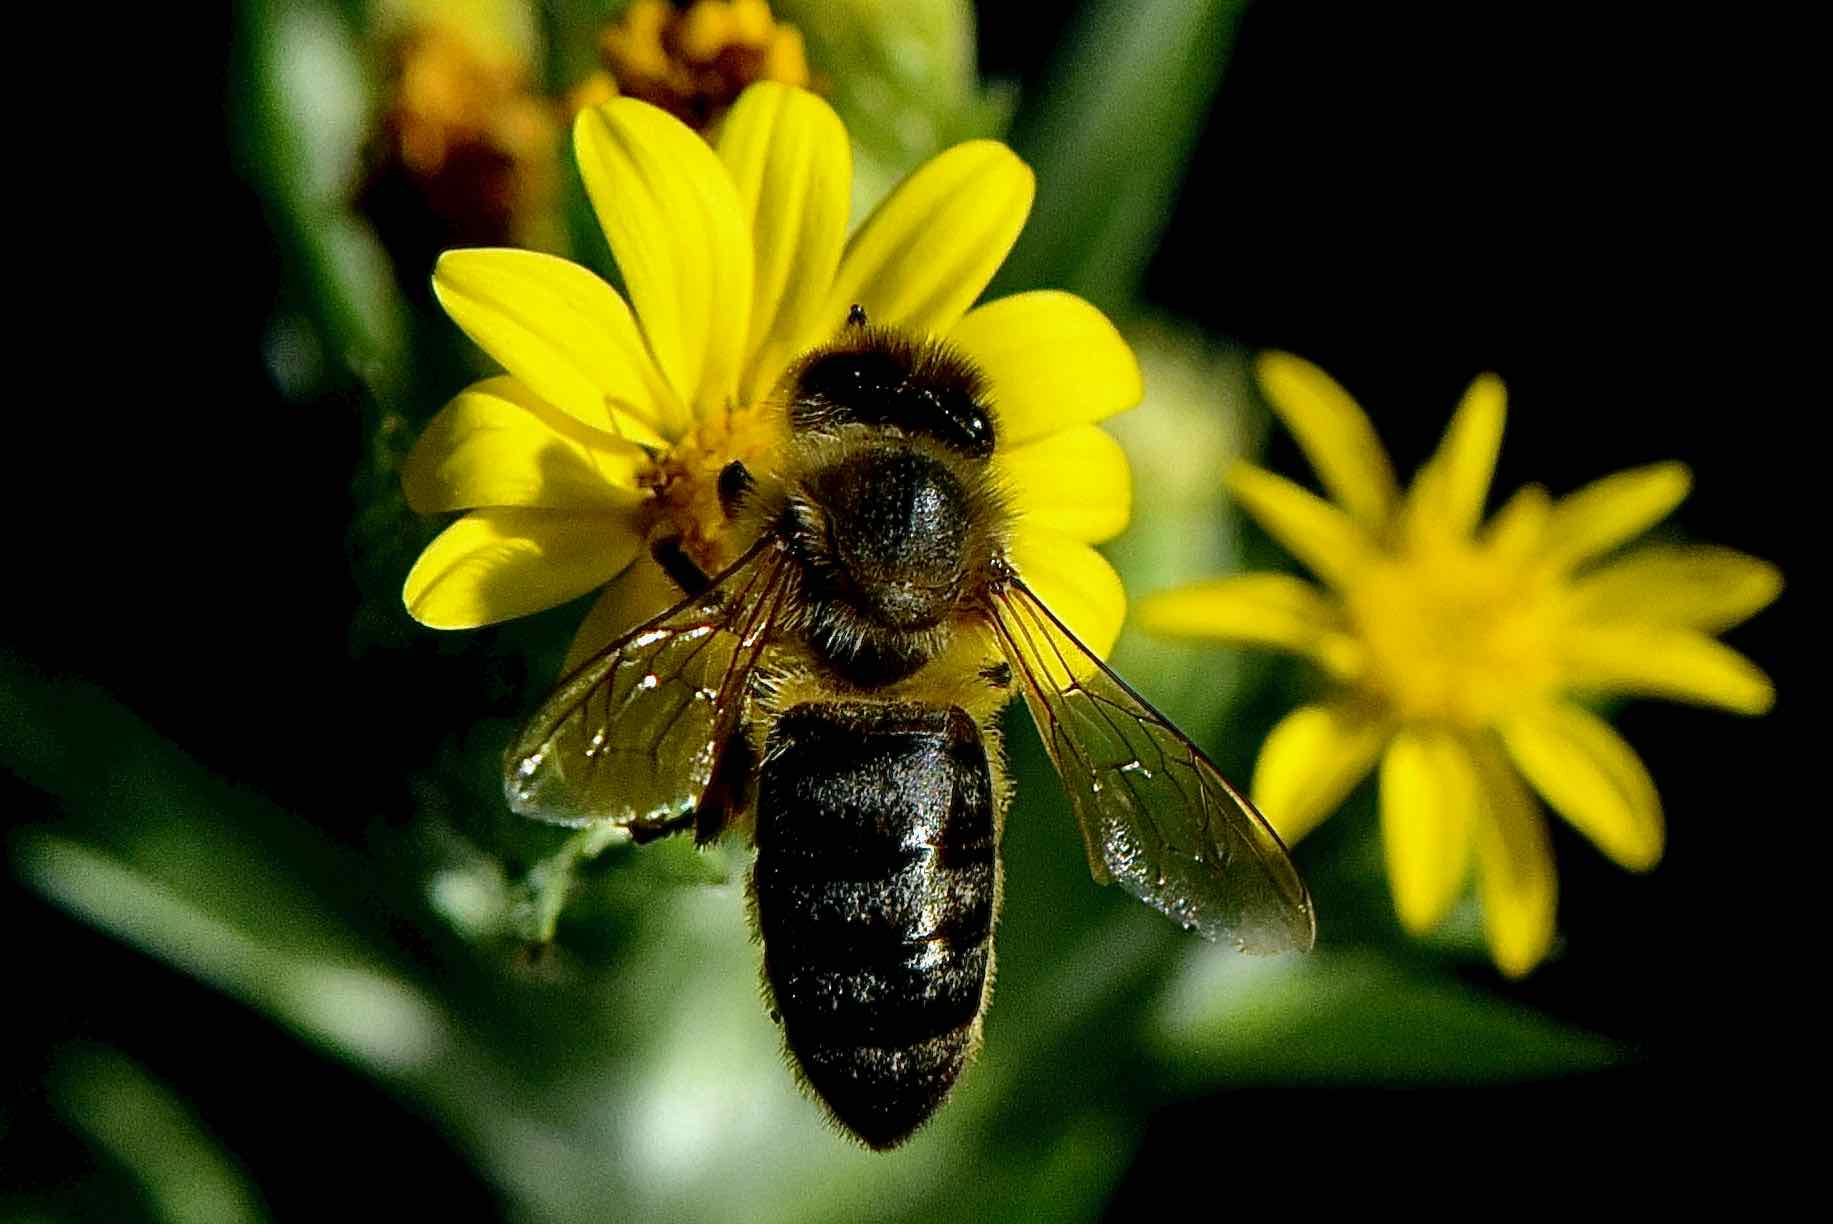 western honeybee